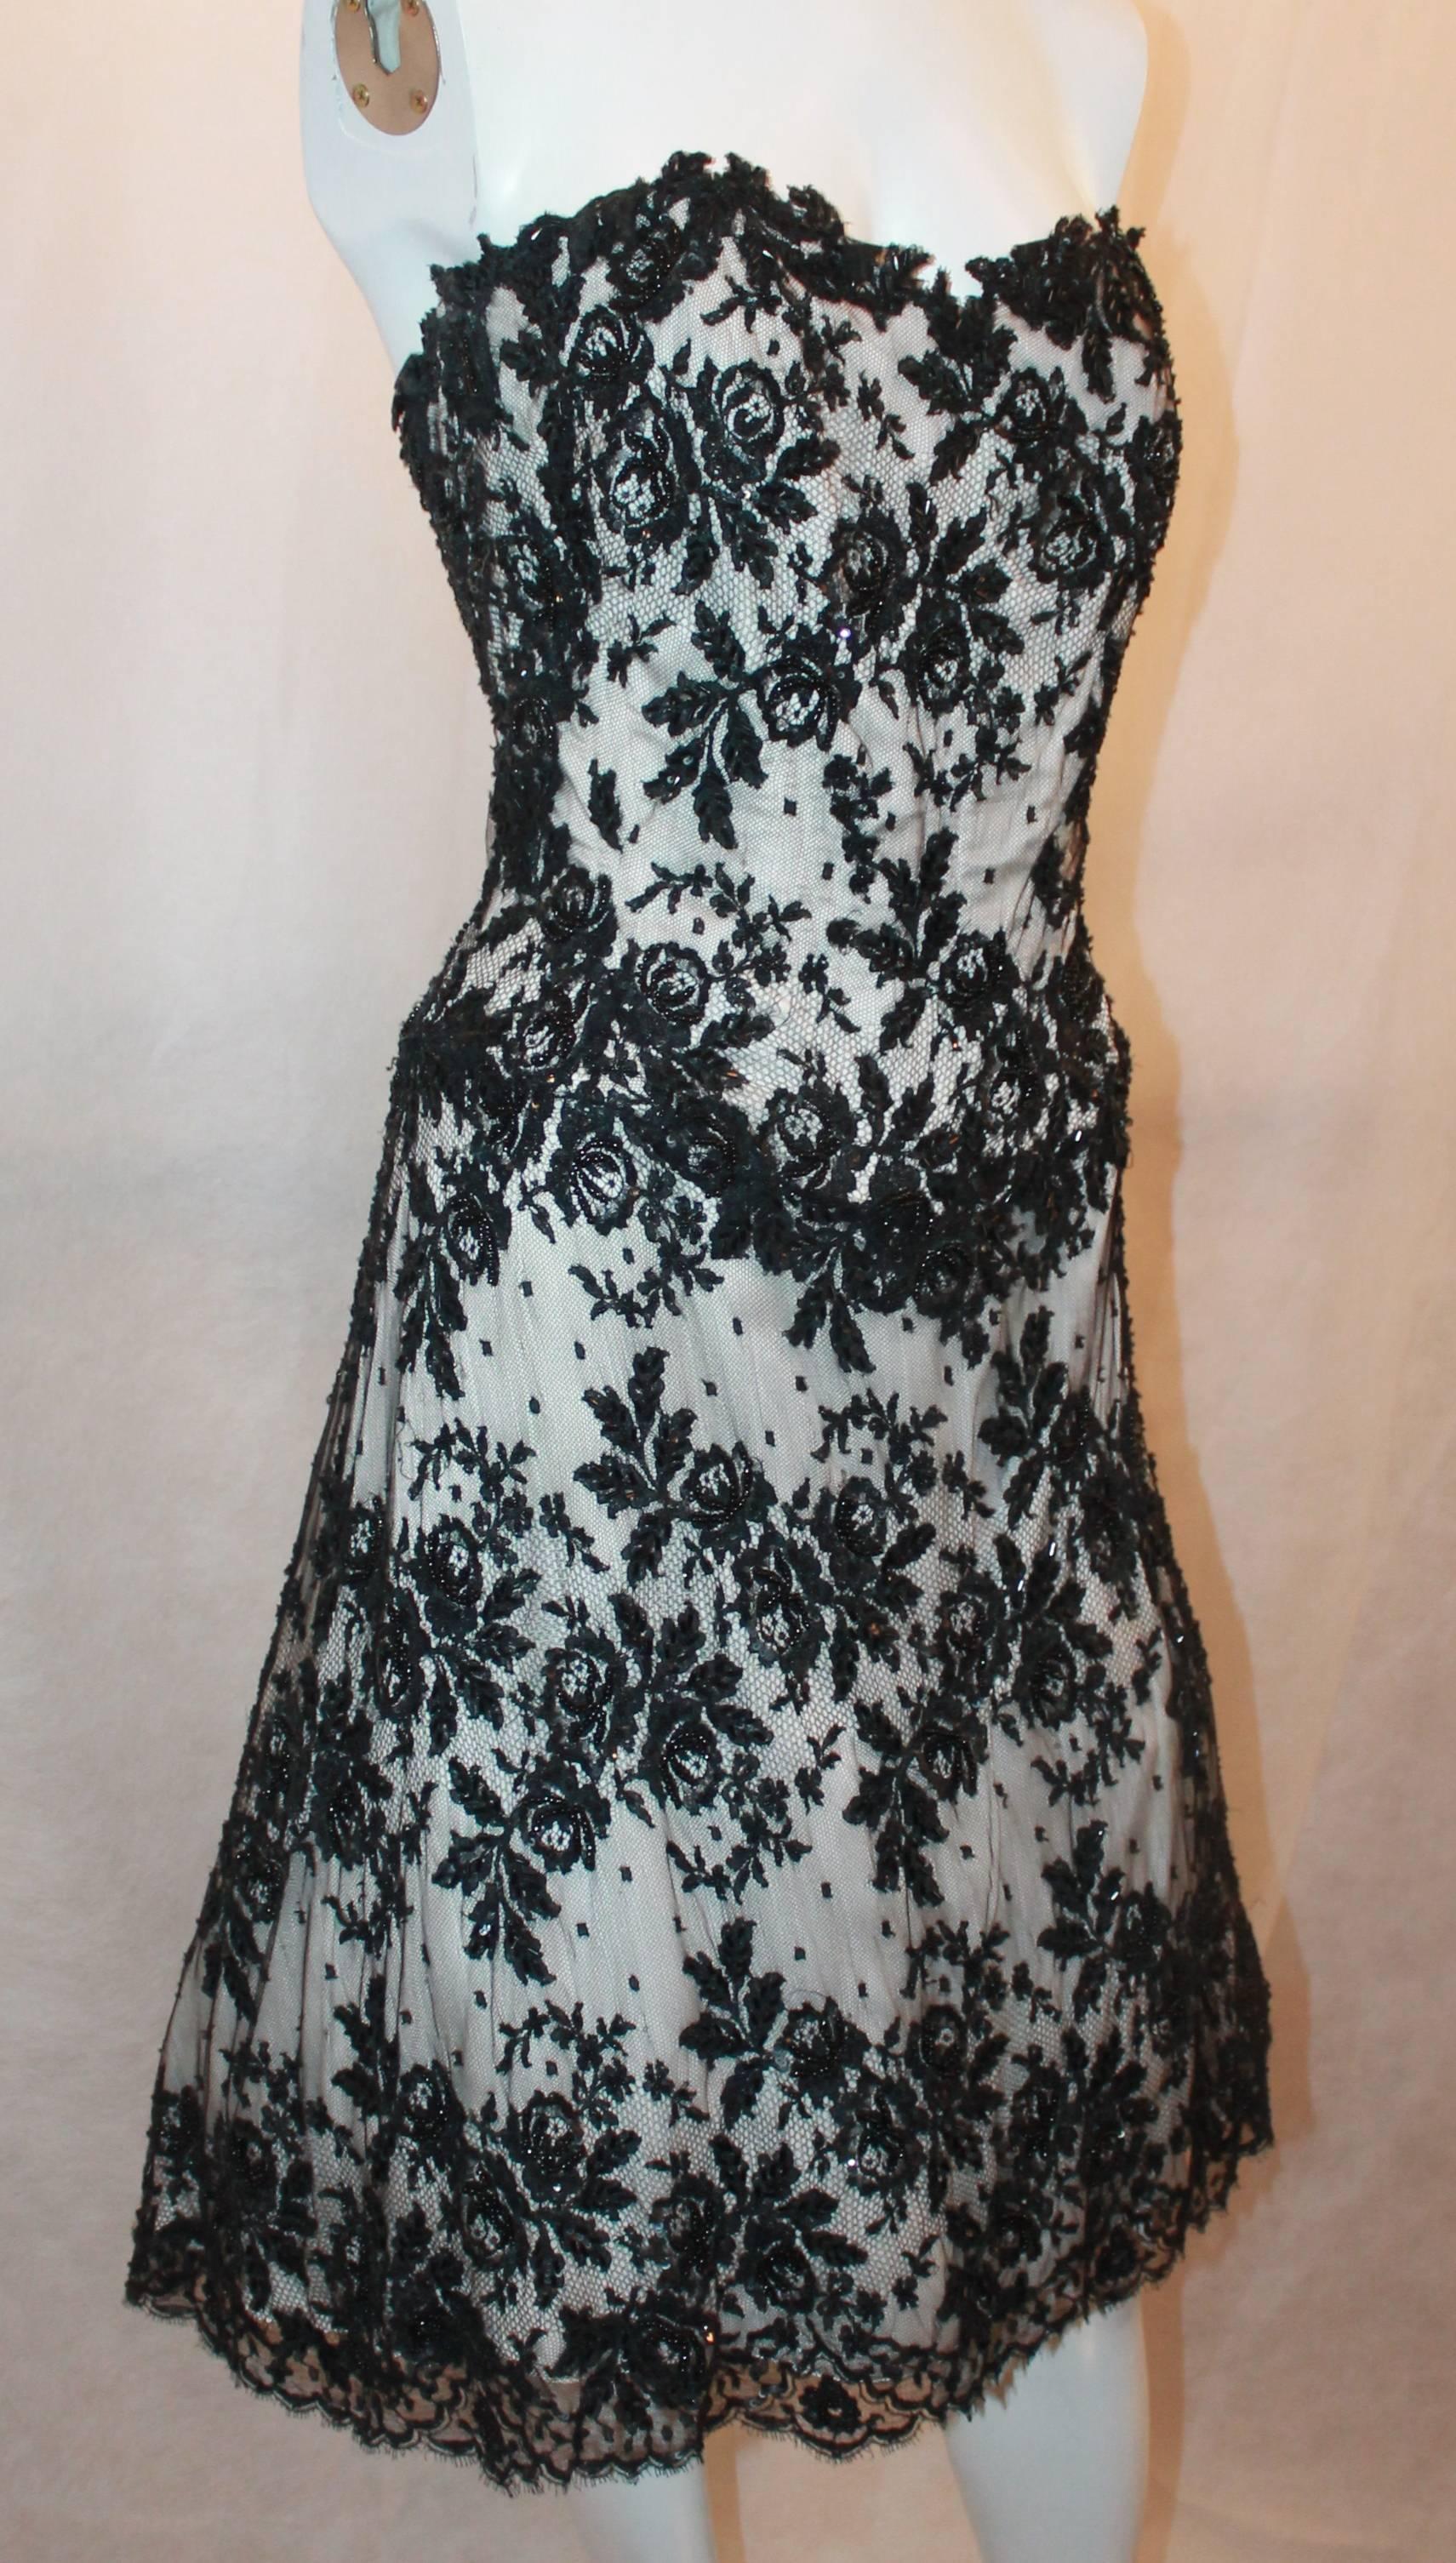 Vicky Tiel Schwarzes & Weißes trägerloses Spitzenkleid mit Perlen - 44.  Dieses schöne Kleid ist in ausgezeichnetem Zustand.  Es hat eine wunderschöne schwarze Spitze über einer weißen Nylonmischung, ein eingebautes Korsett an den Hüften,